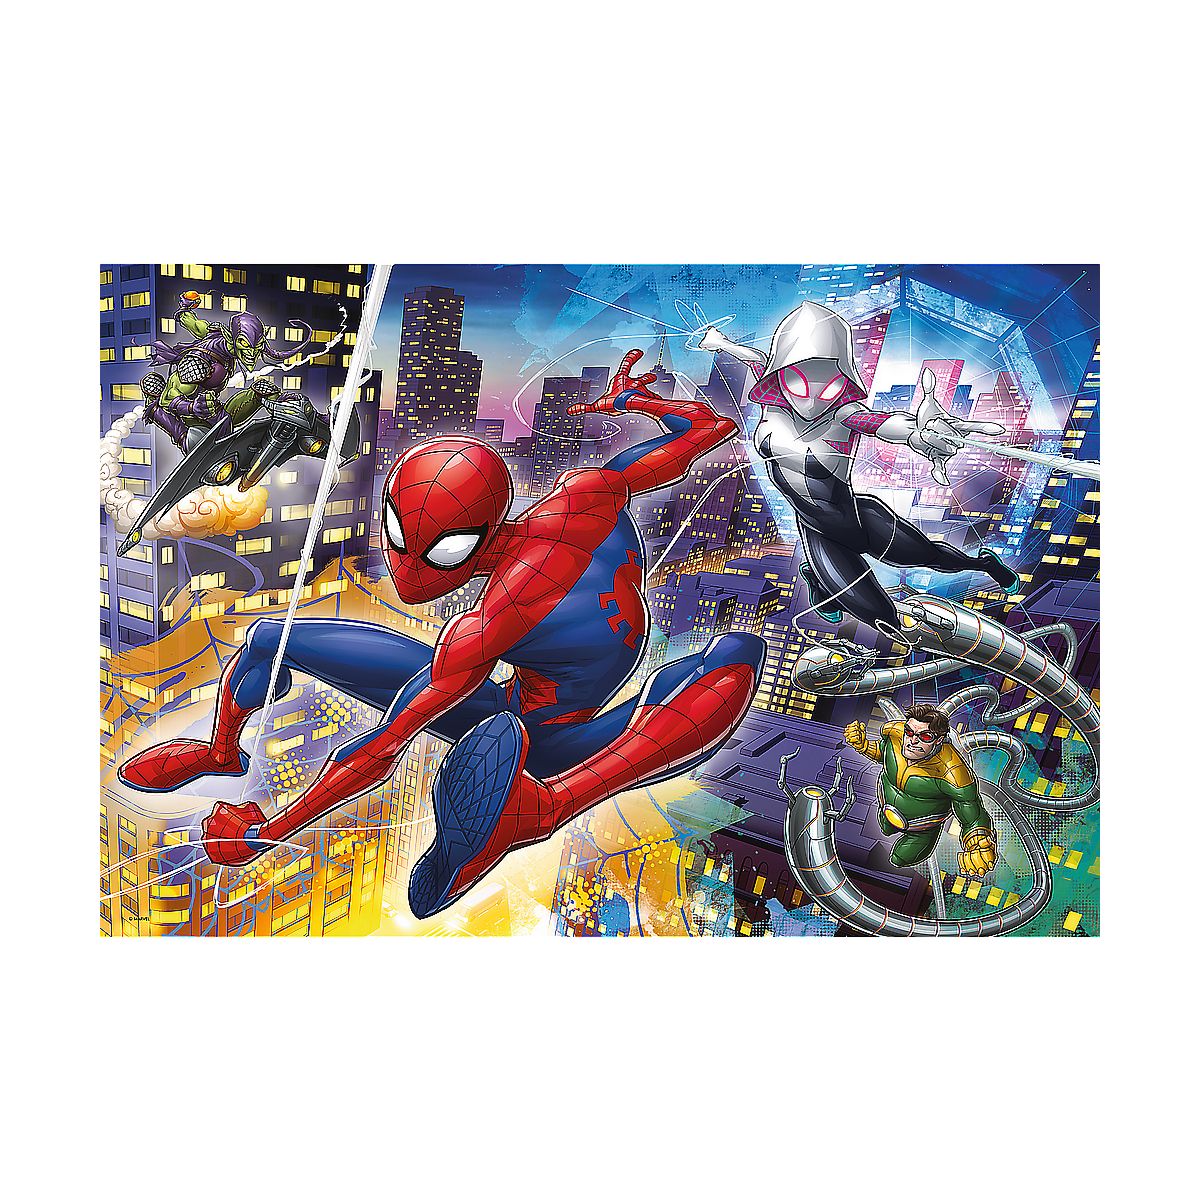 Puzzle Trefl Spiderman 24 el. (14289)